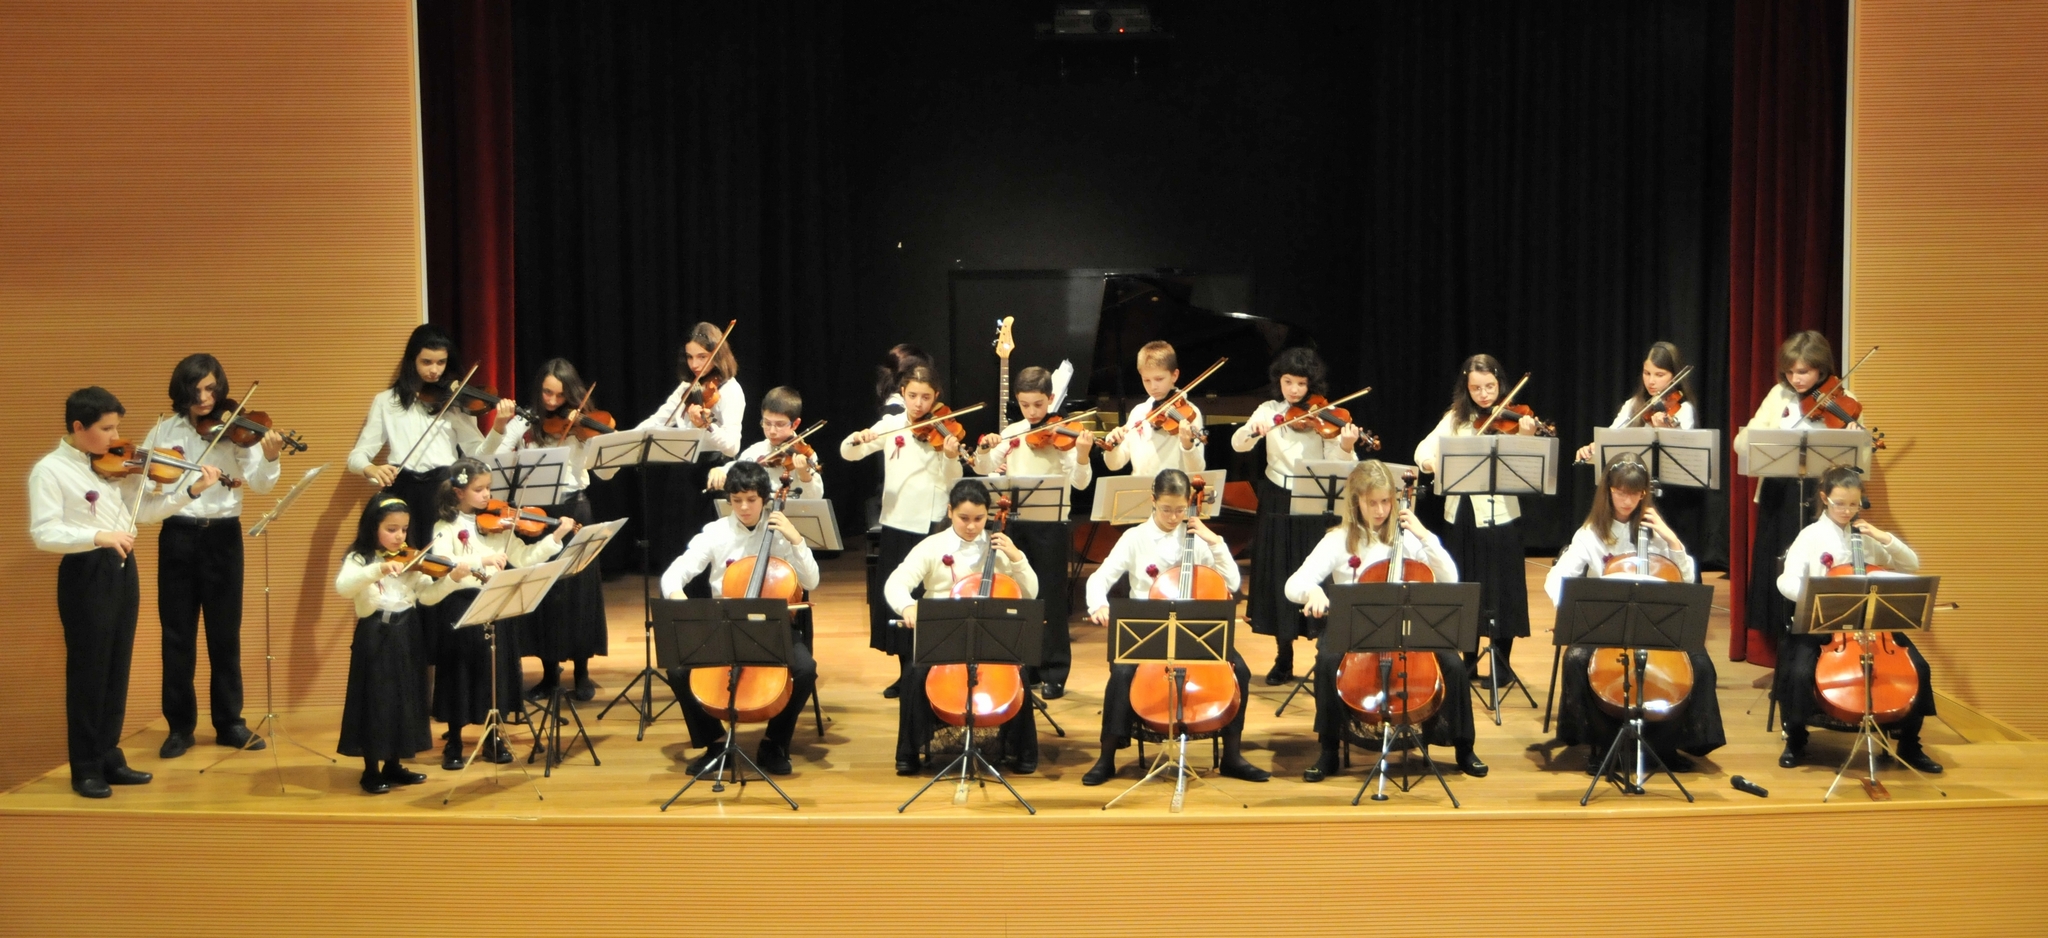 Piccola Orchestra - Suona la musica classica a scuola primaria (nuova  edizione): 15 brani di musica classica facilissimi da suonare a scuola  primaria